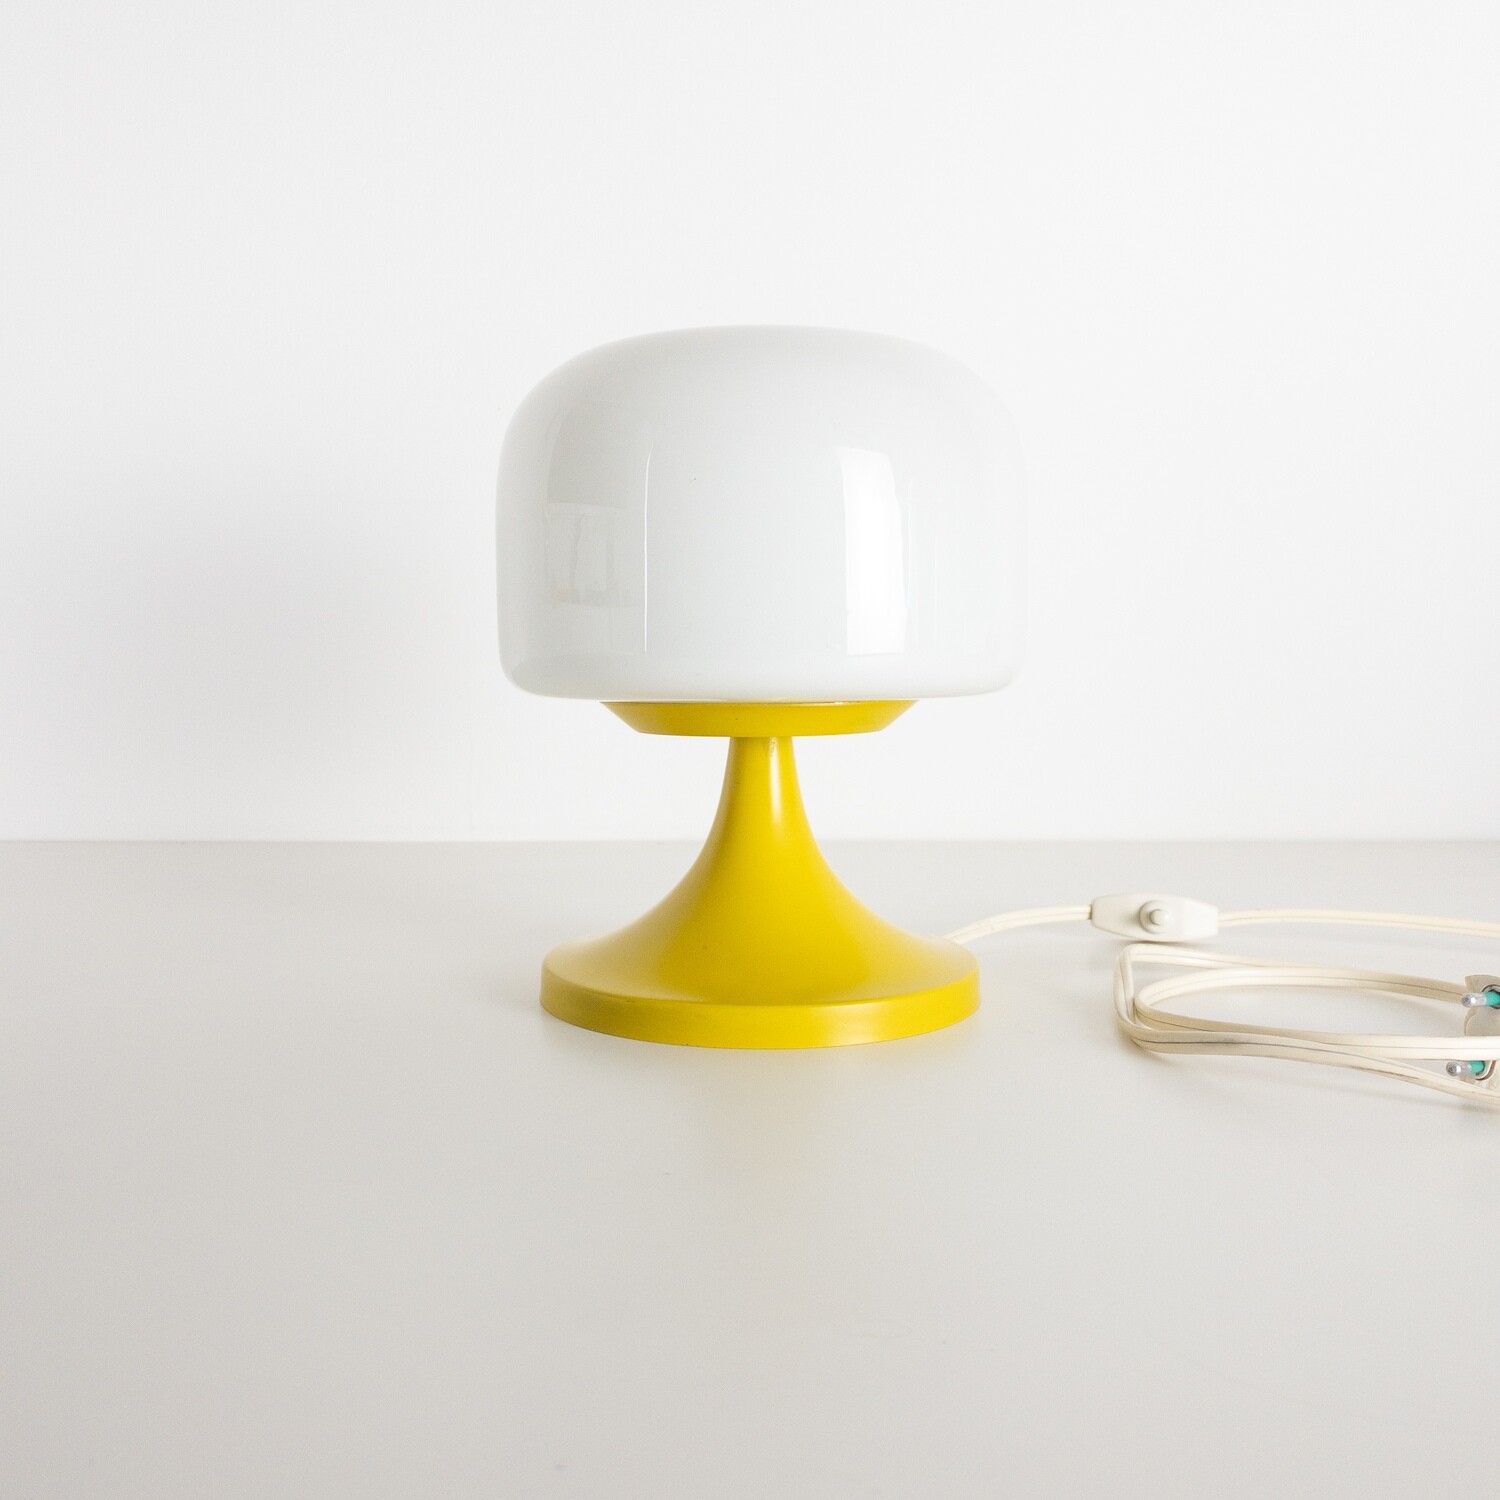 Space Age Style Mushroom Table Lamp